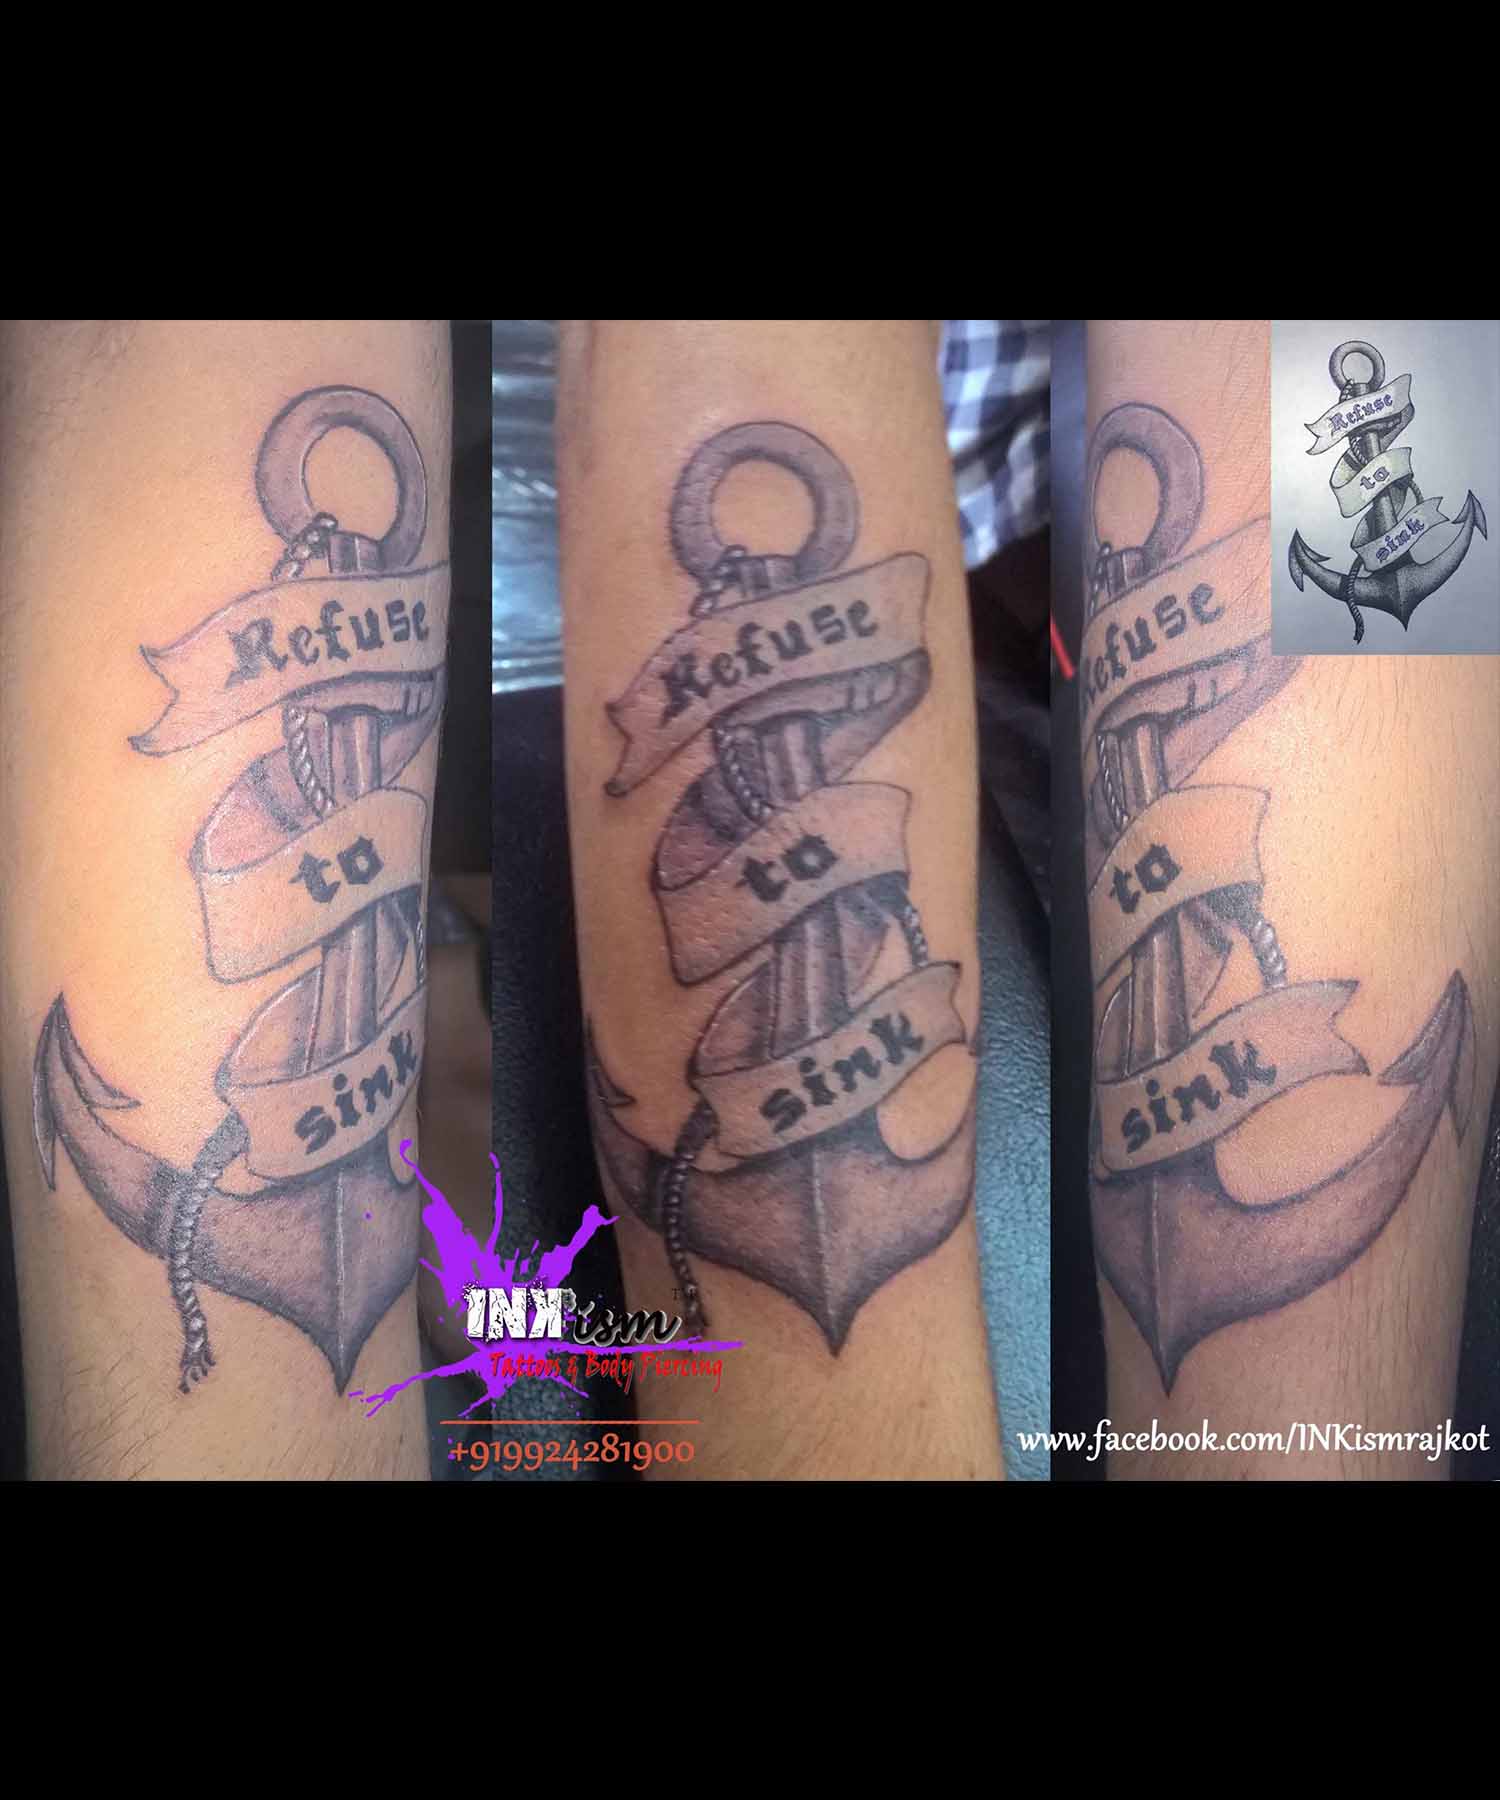 Anchor tattoo, Grey wash tattoo, Refuse to sink tattoo, Inkism tattoo and body piercing rajkot gujarat